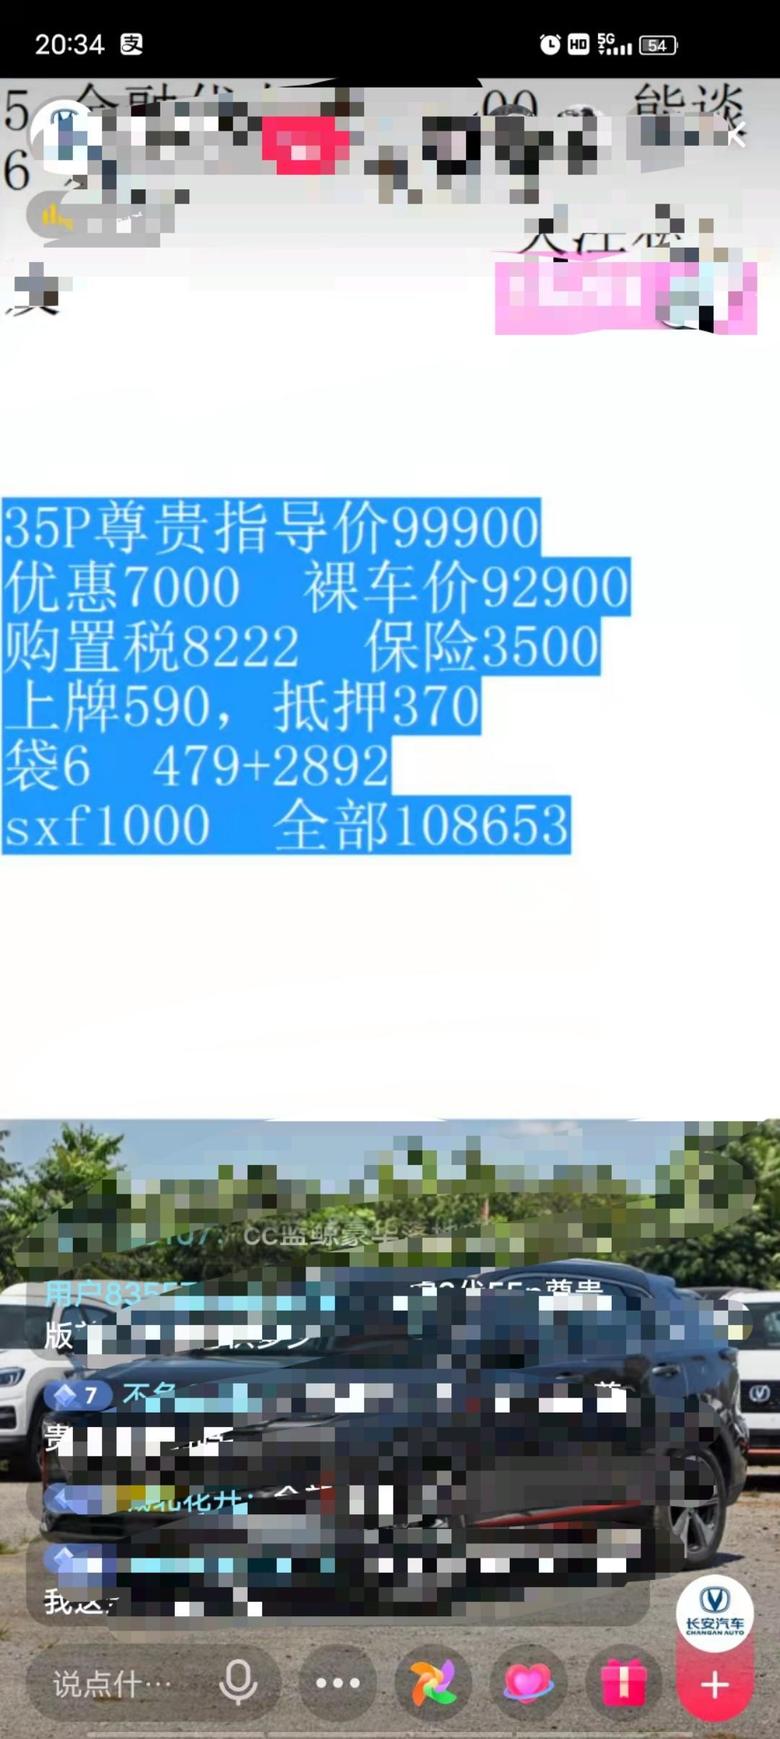 长安cs35 plus 郑州地区，cs35p自动尊贵，贷6w，目前报价10.86，大家觉得合适么，还能聊多少？？